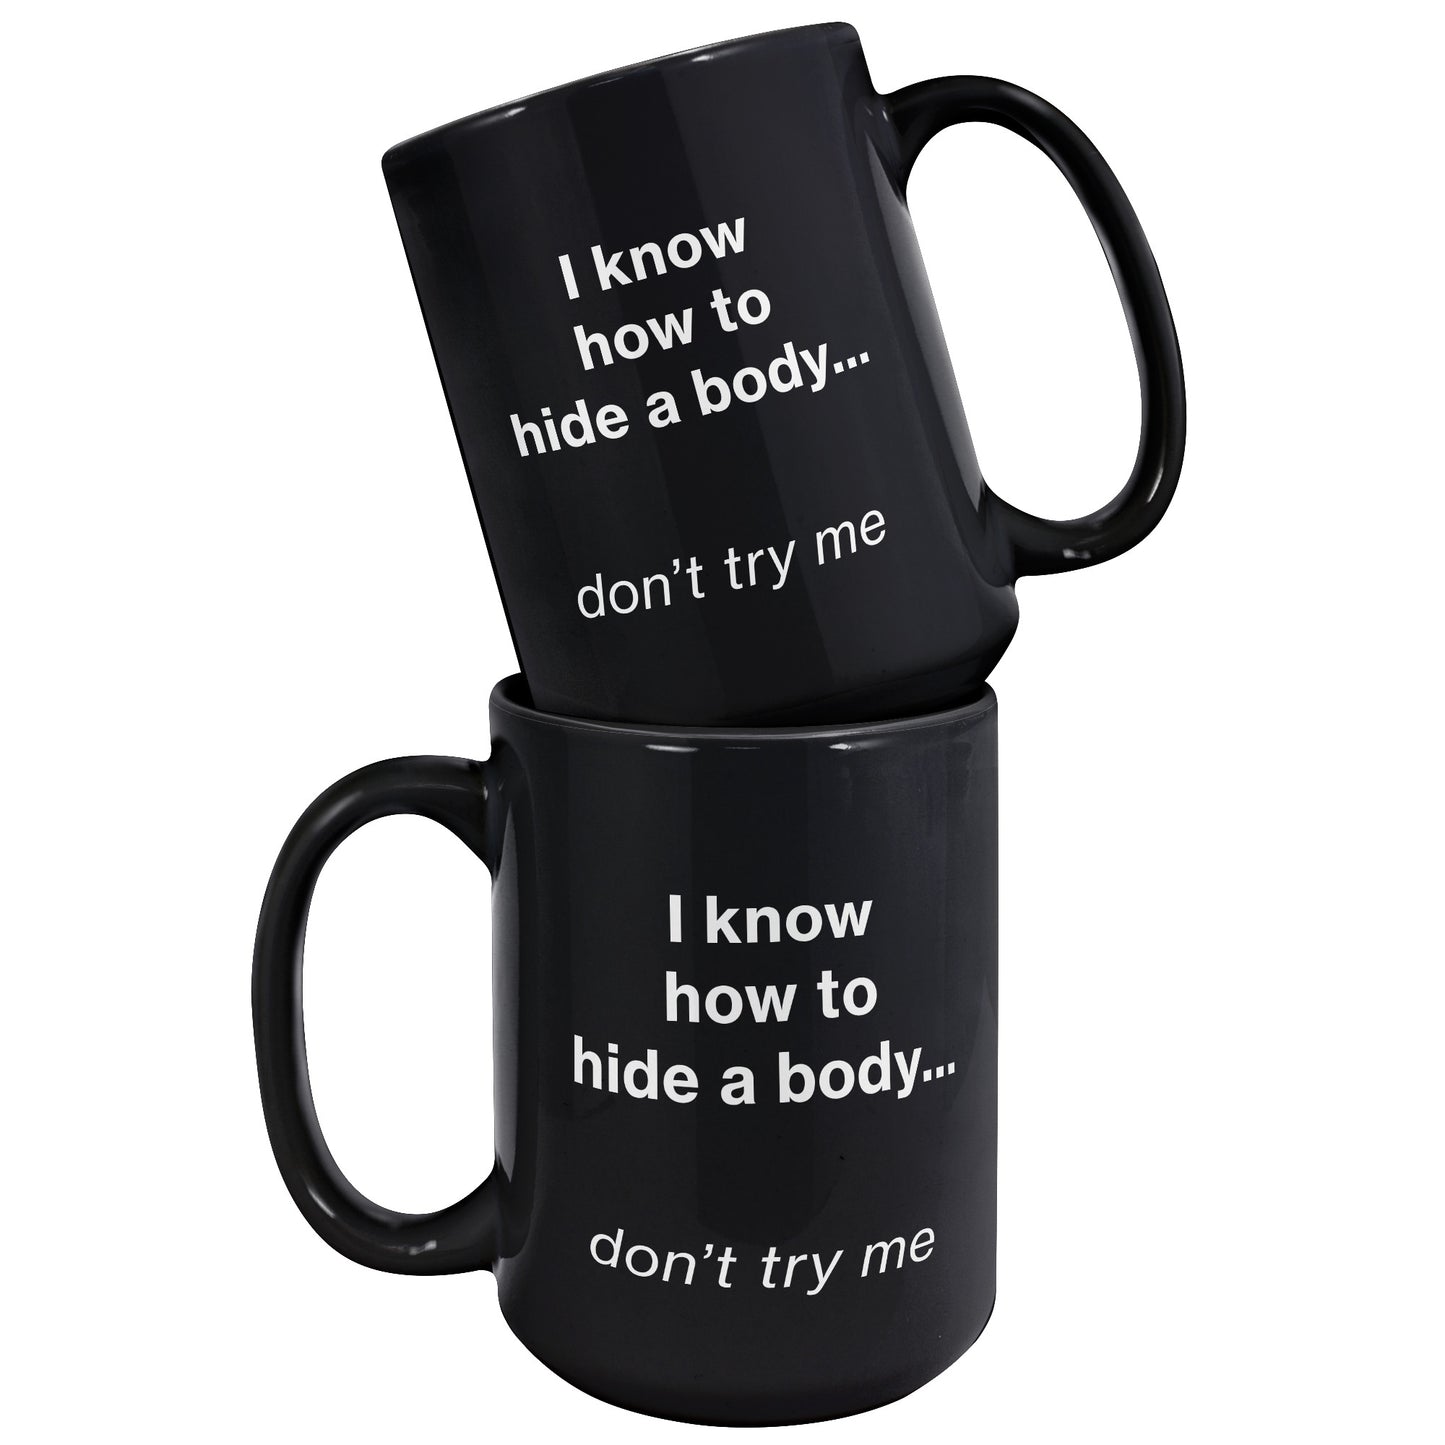 Hide a Body mug - black